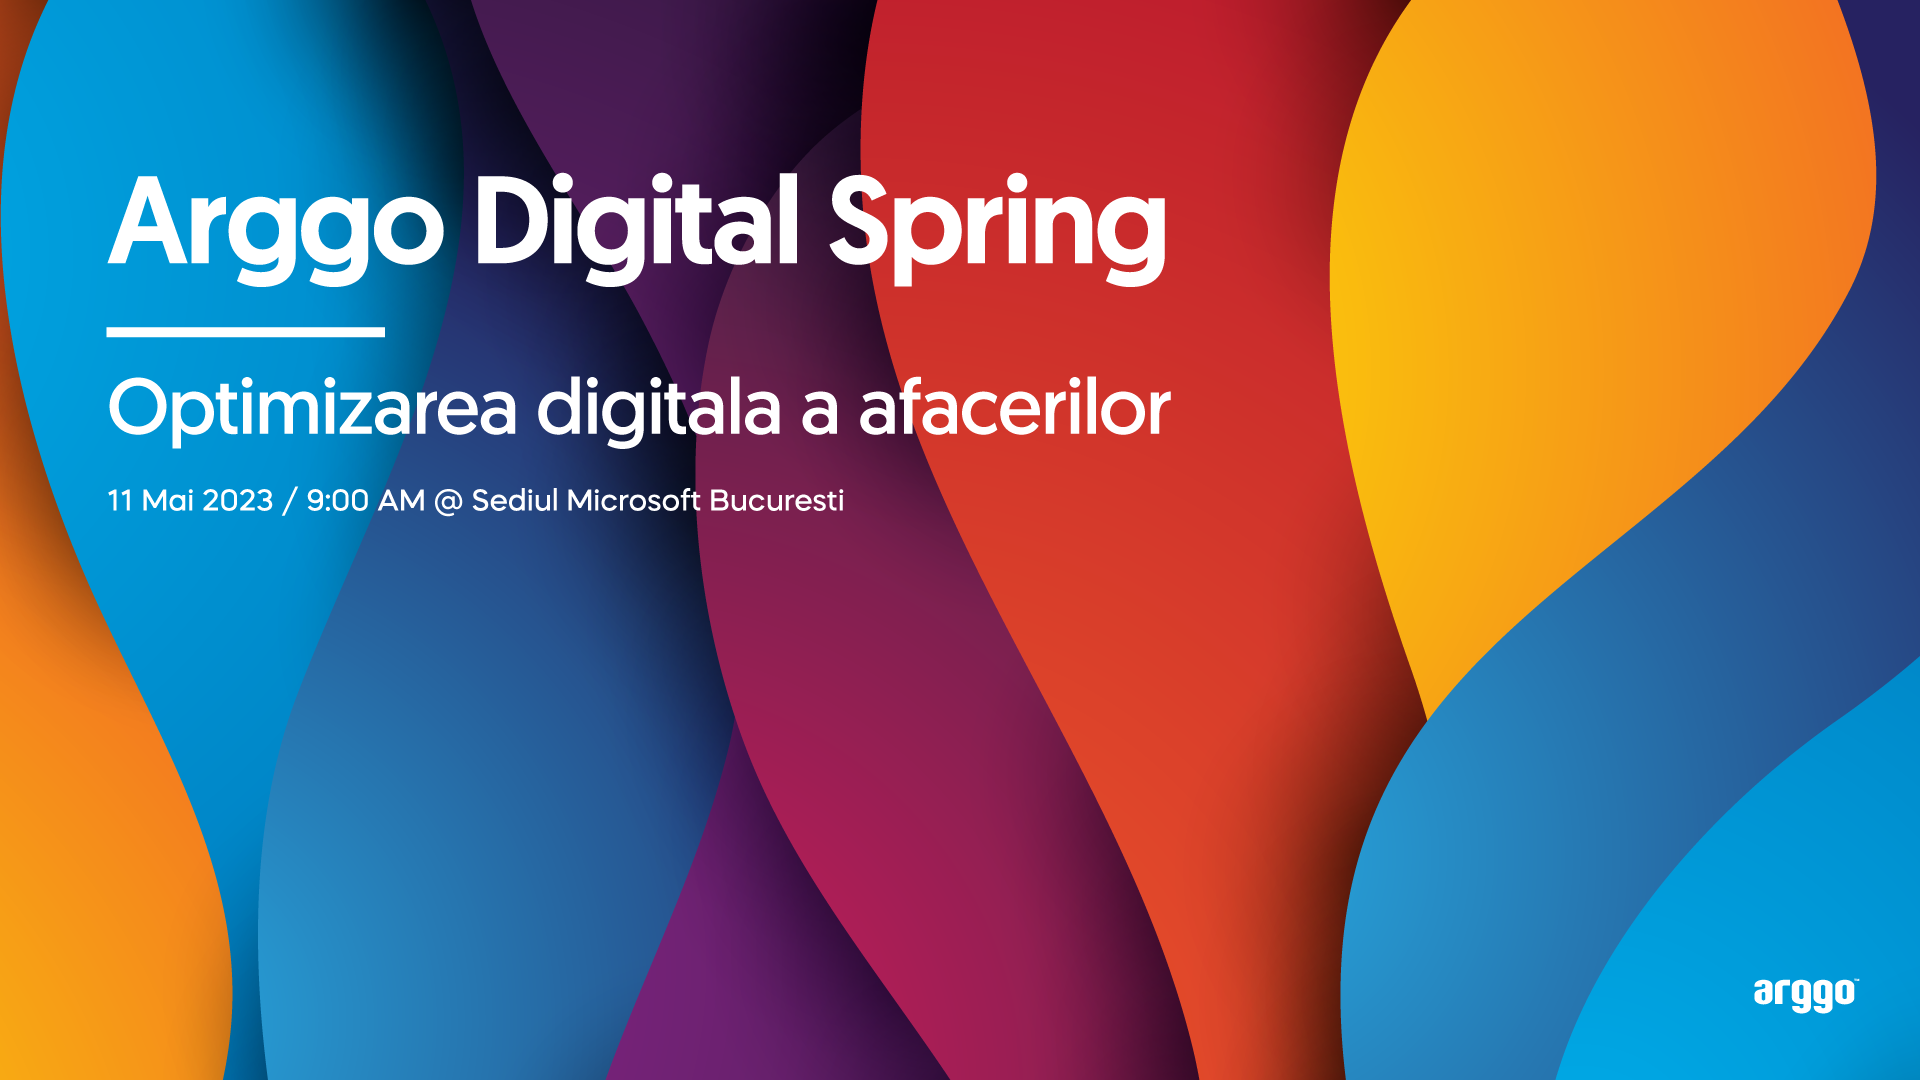 Arggo Digital Spring - Optimizarea digitala a afacerilor